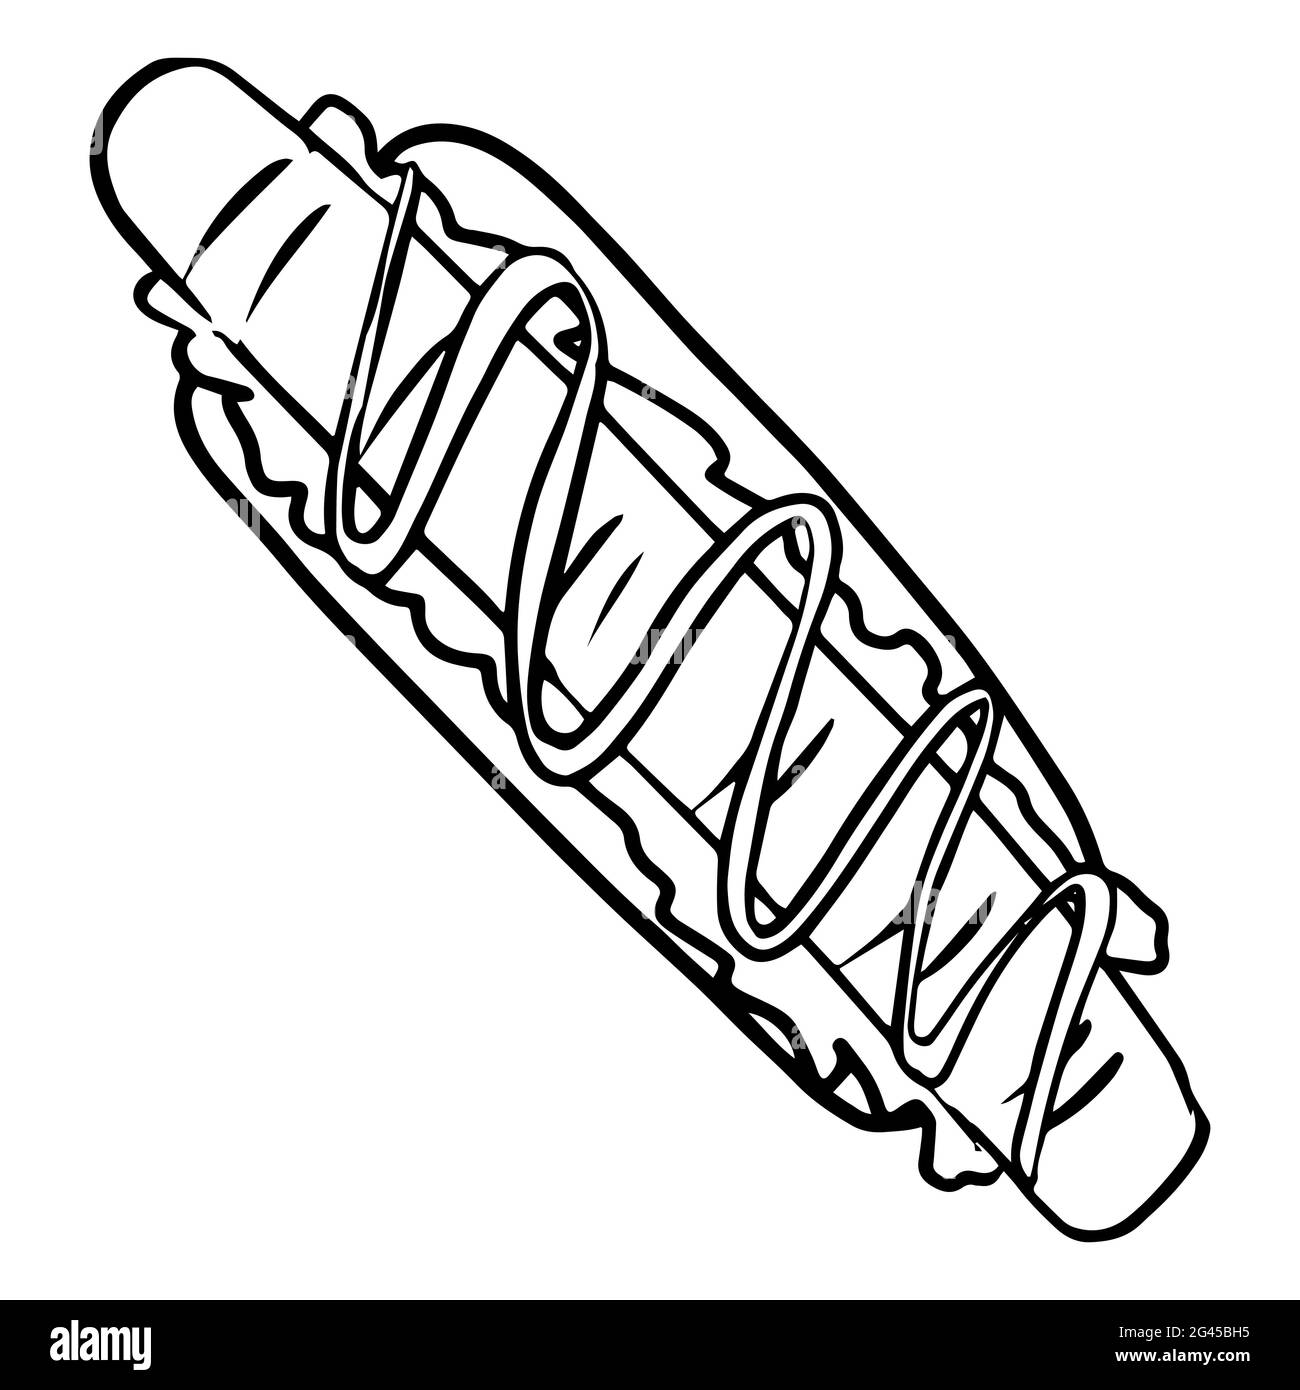 Hotdog disegnato a mano con illustrazione della senape in bianco e nero. Illustrazione Vettoriale